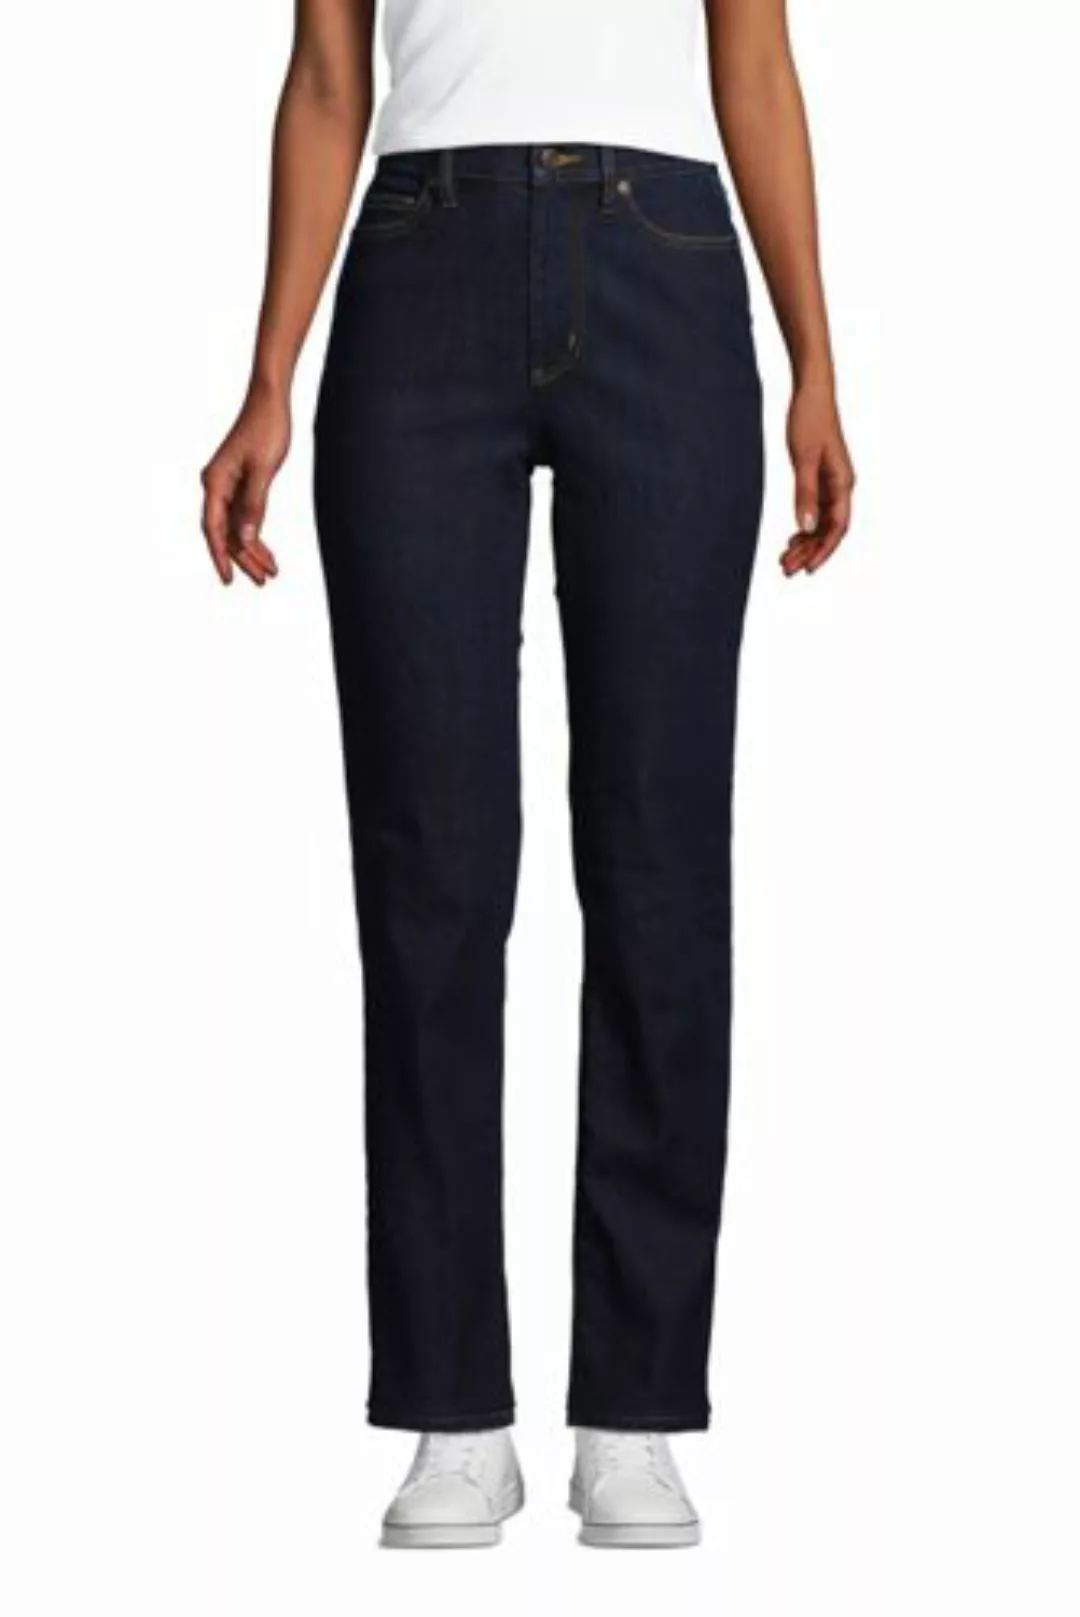 Straight Fit Öko Jeans High Waist, Damen, Größe: 40 32 Normal, Blau, Elasth günstig online kaufen